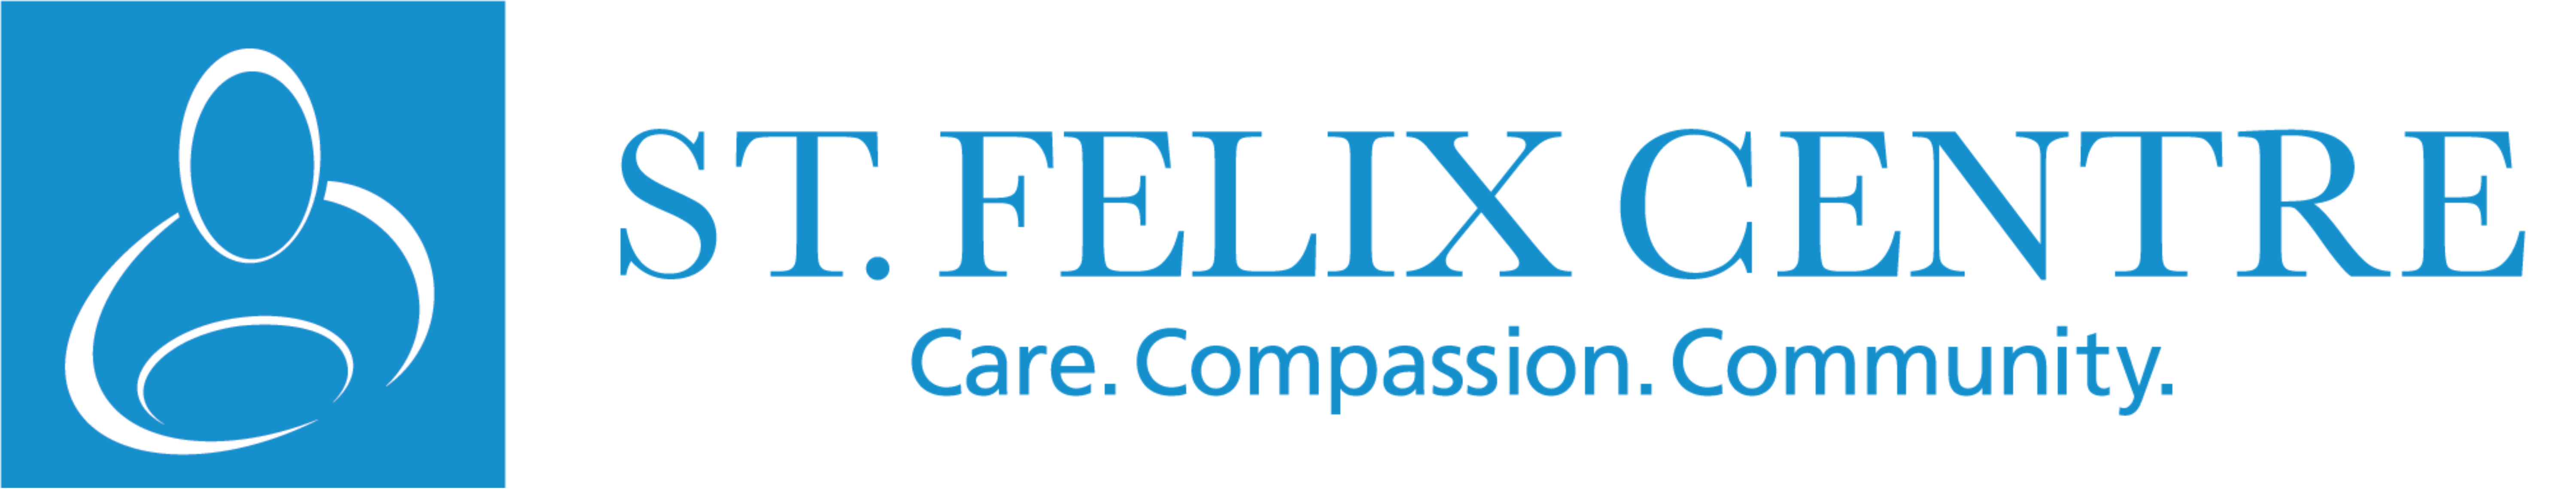 St. Felix Centre - Care Compassion Community